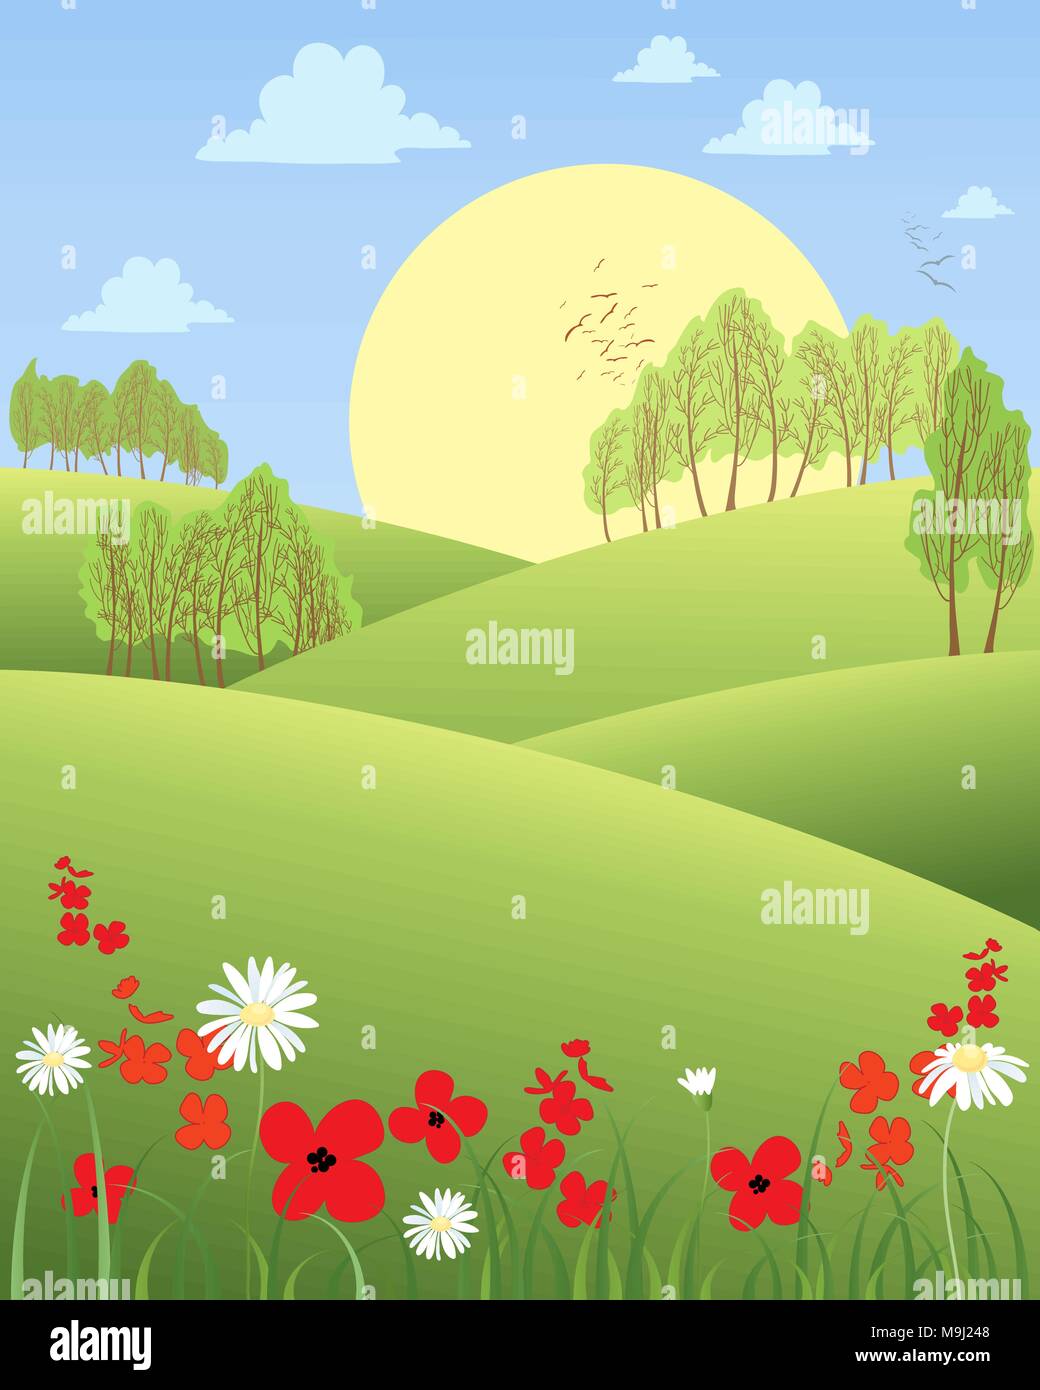 Ein Vektor Abbildung im EPS 10 Format eines ländlichen Sommermorgen mit sanften Hügeln Wildblumen und Bäume mit einem großen gelben Sonne Stock Vektor